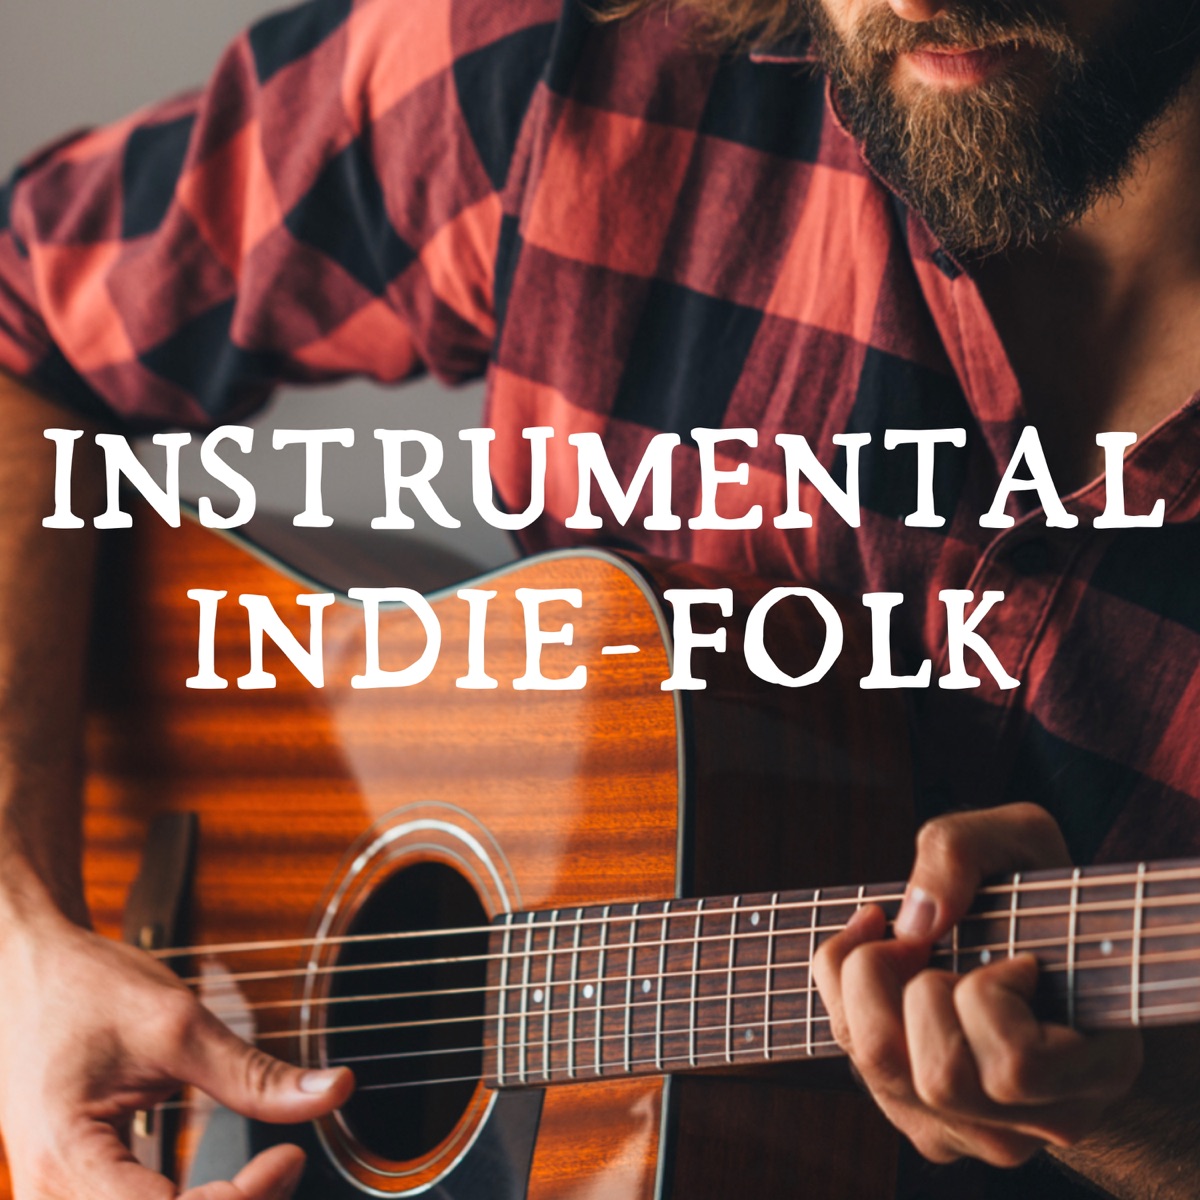 Instrumental Indie-Folk - Album by Various Artists - Apple Music